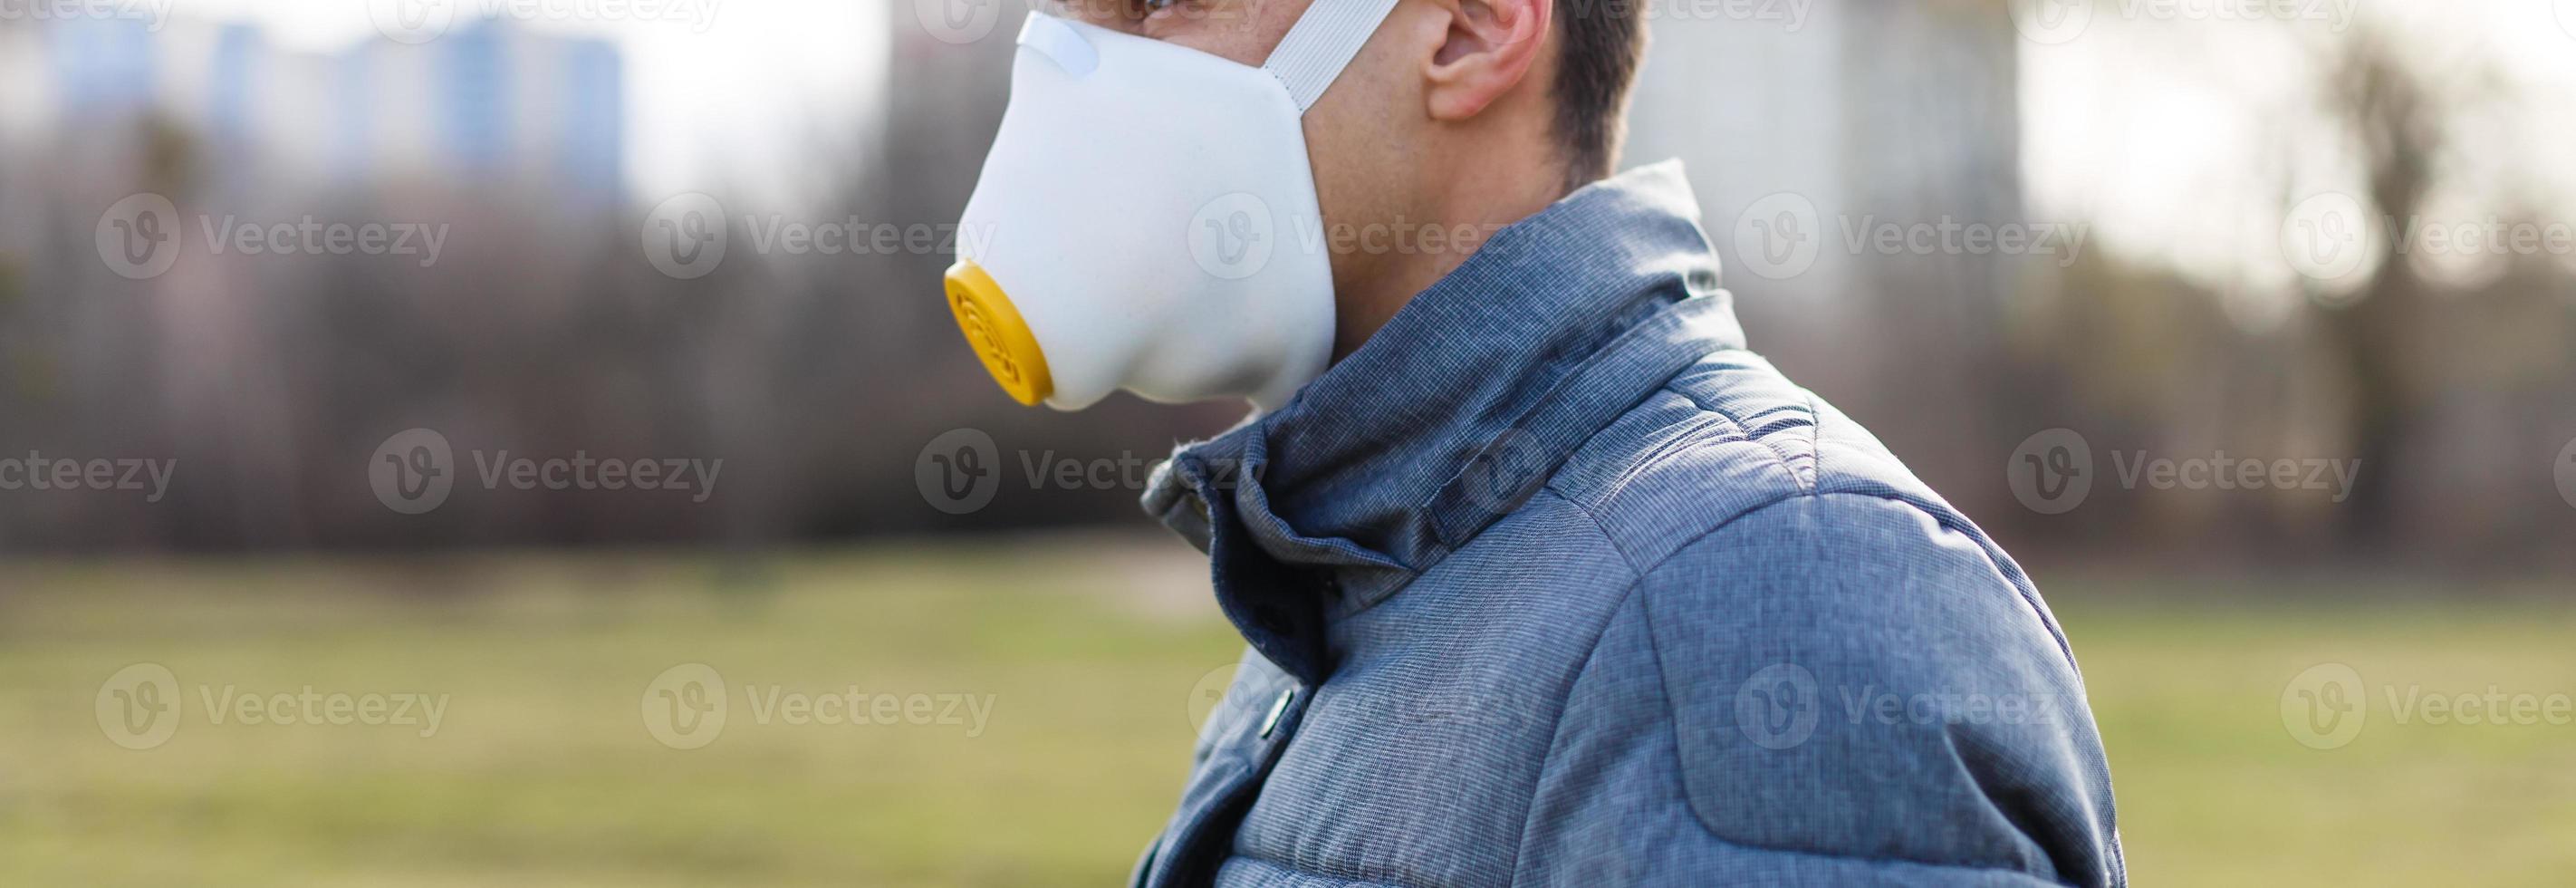 asiatico uomo indossare il viso maschera dovuto per aria inquinamento - giovane adulto su parco con inquinamento maschera - persona proteggere a partire dal aria contaminazione o coronavirus o covid-19 di indossare maschera. foto